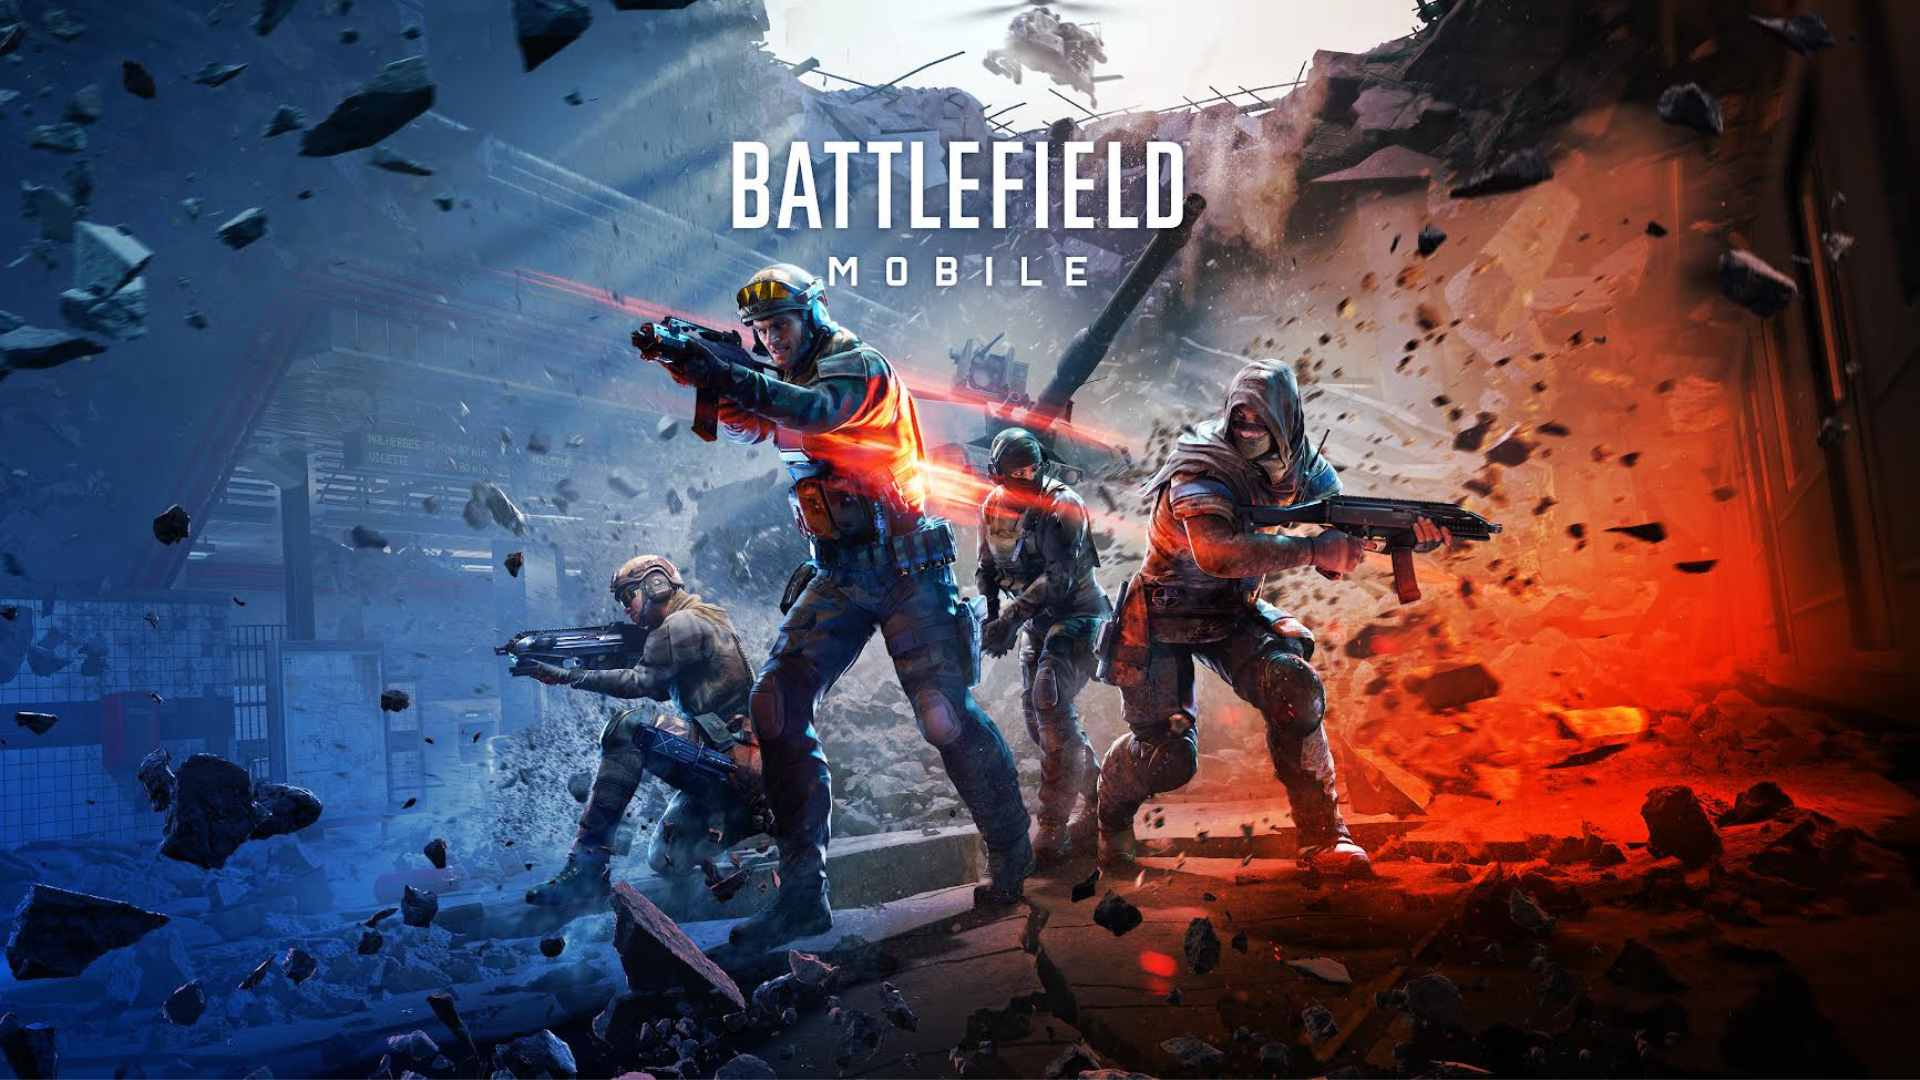 Battlefield Mobile chính thức ra mắt, cấu hình cực kỳ nhẹ nhàng - Ảnh 1.